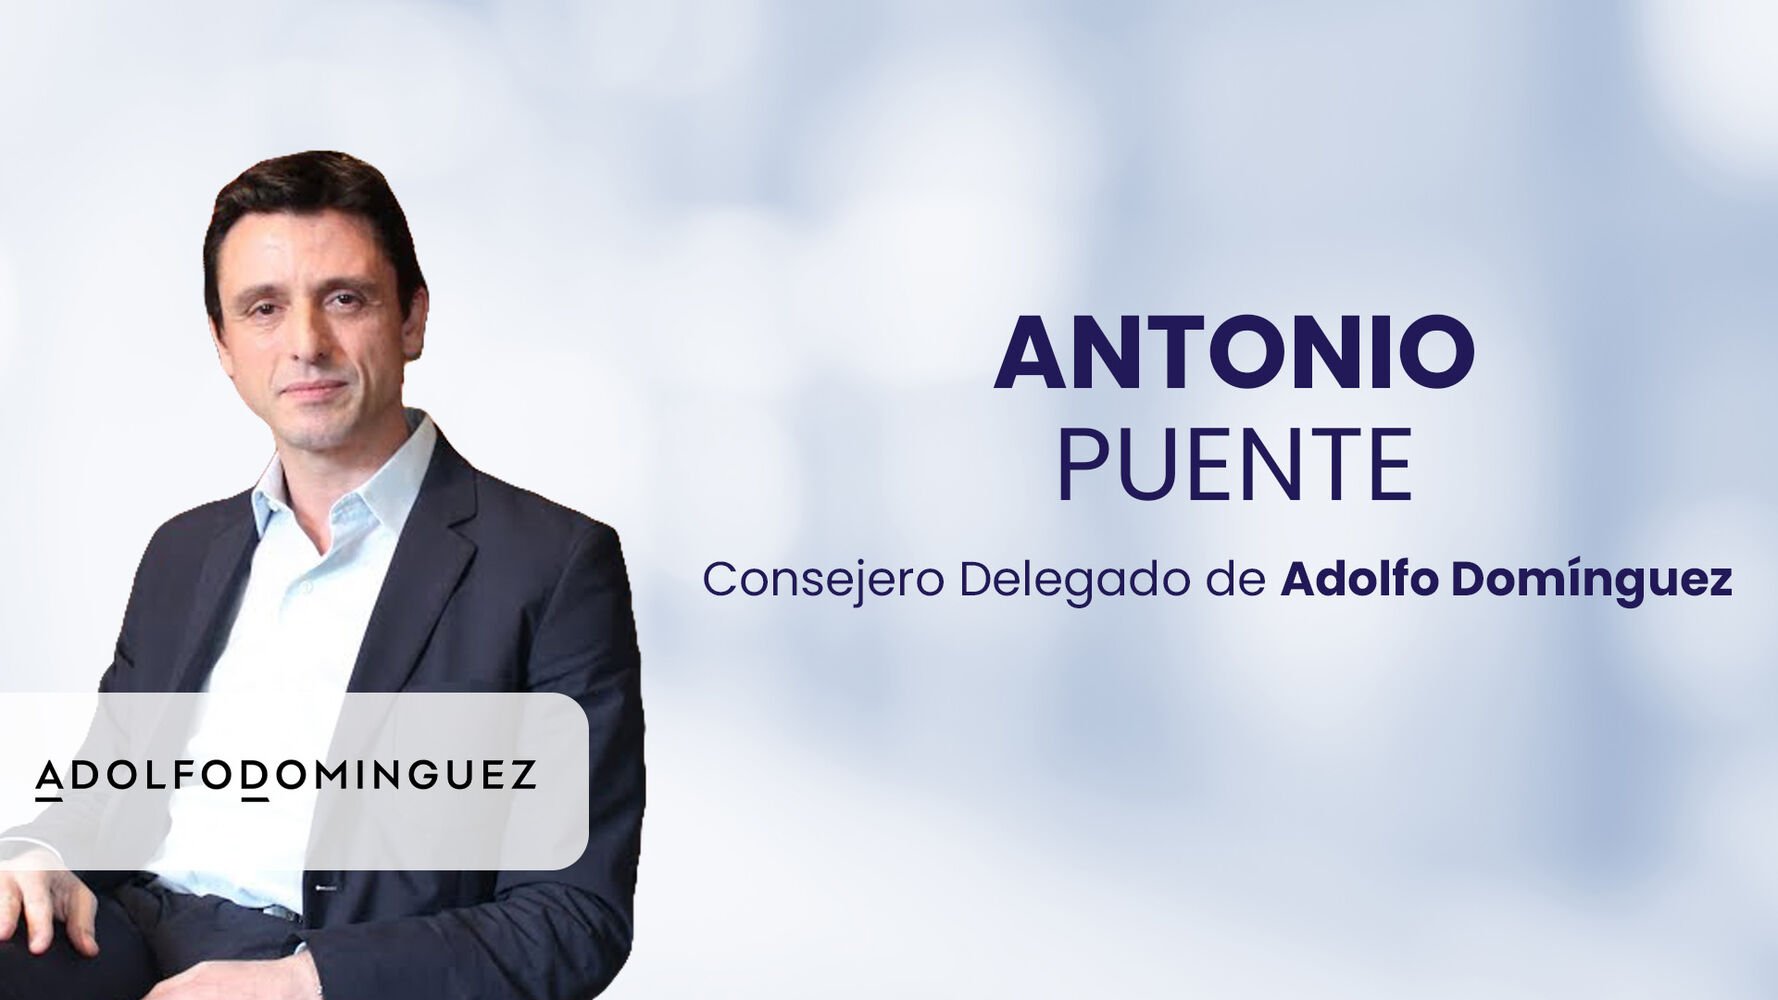 Antonio Puente